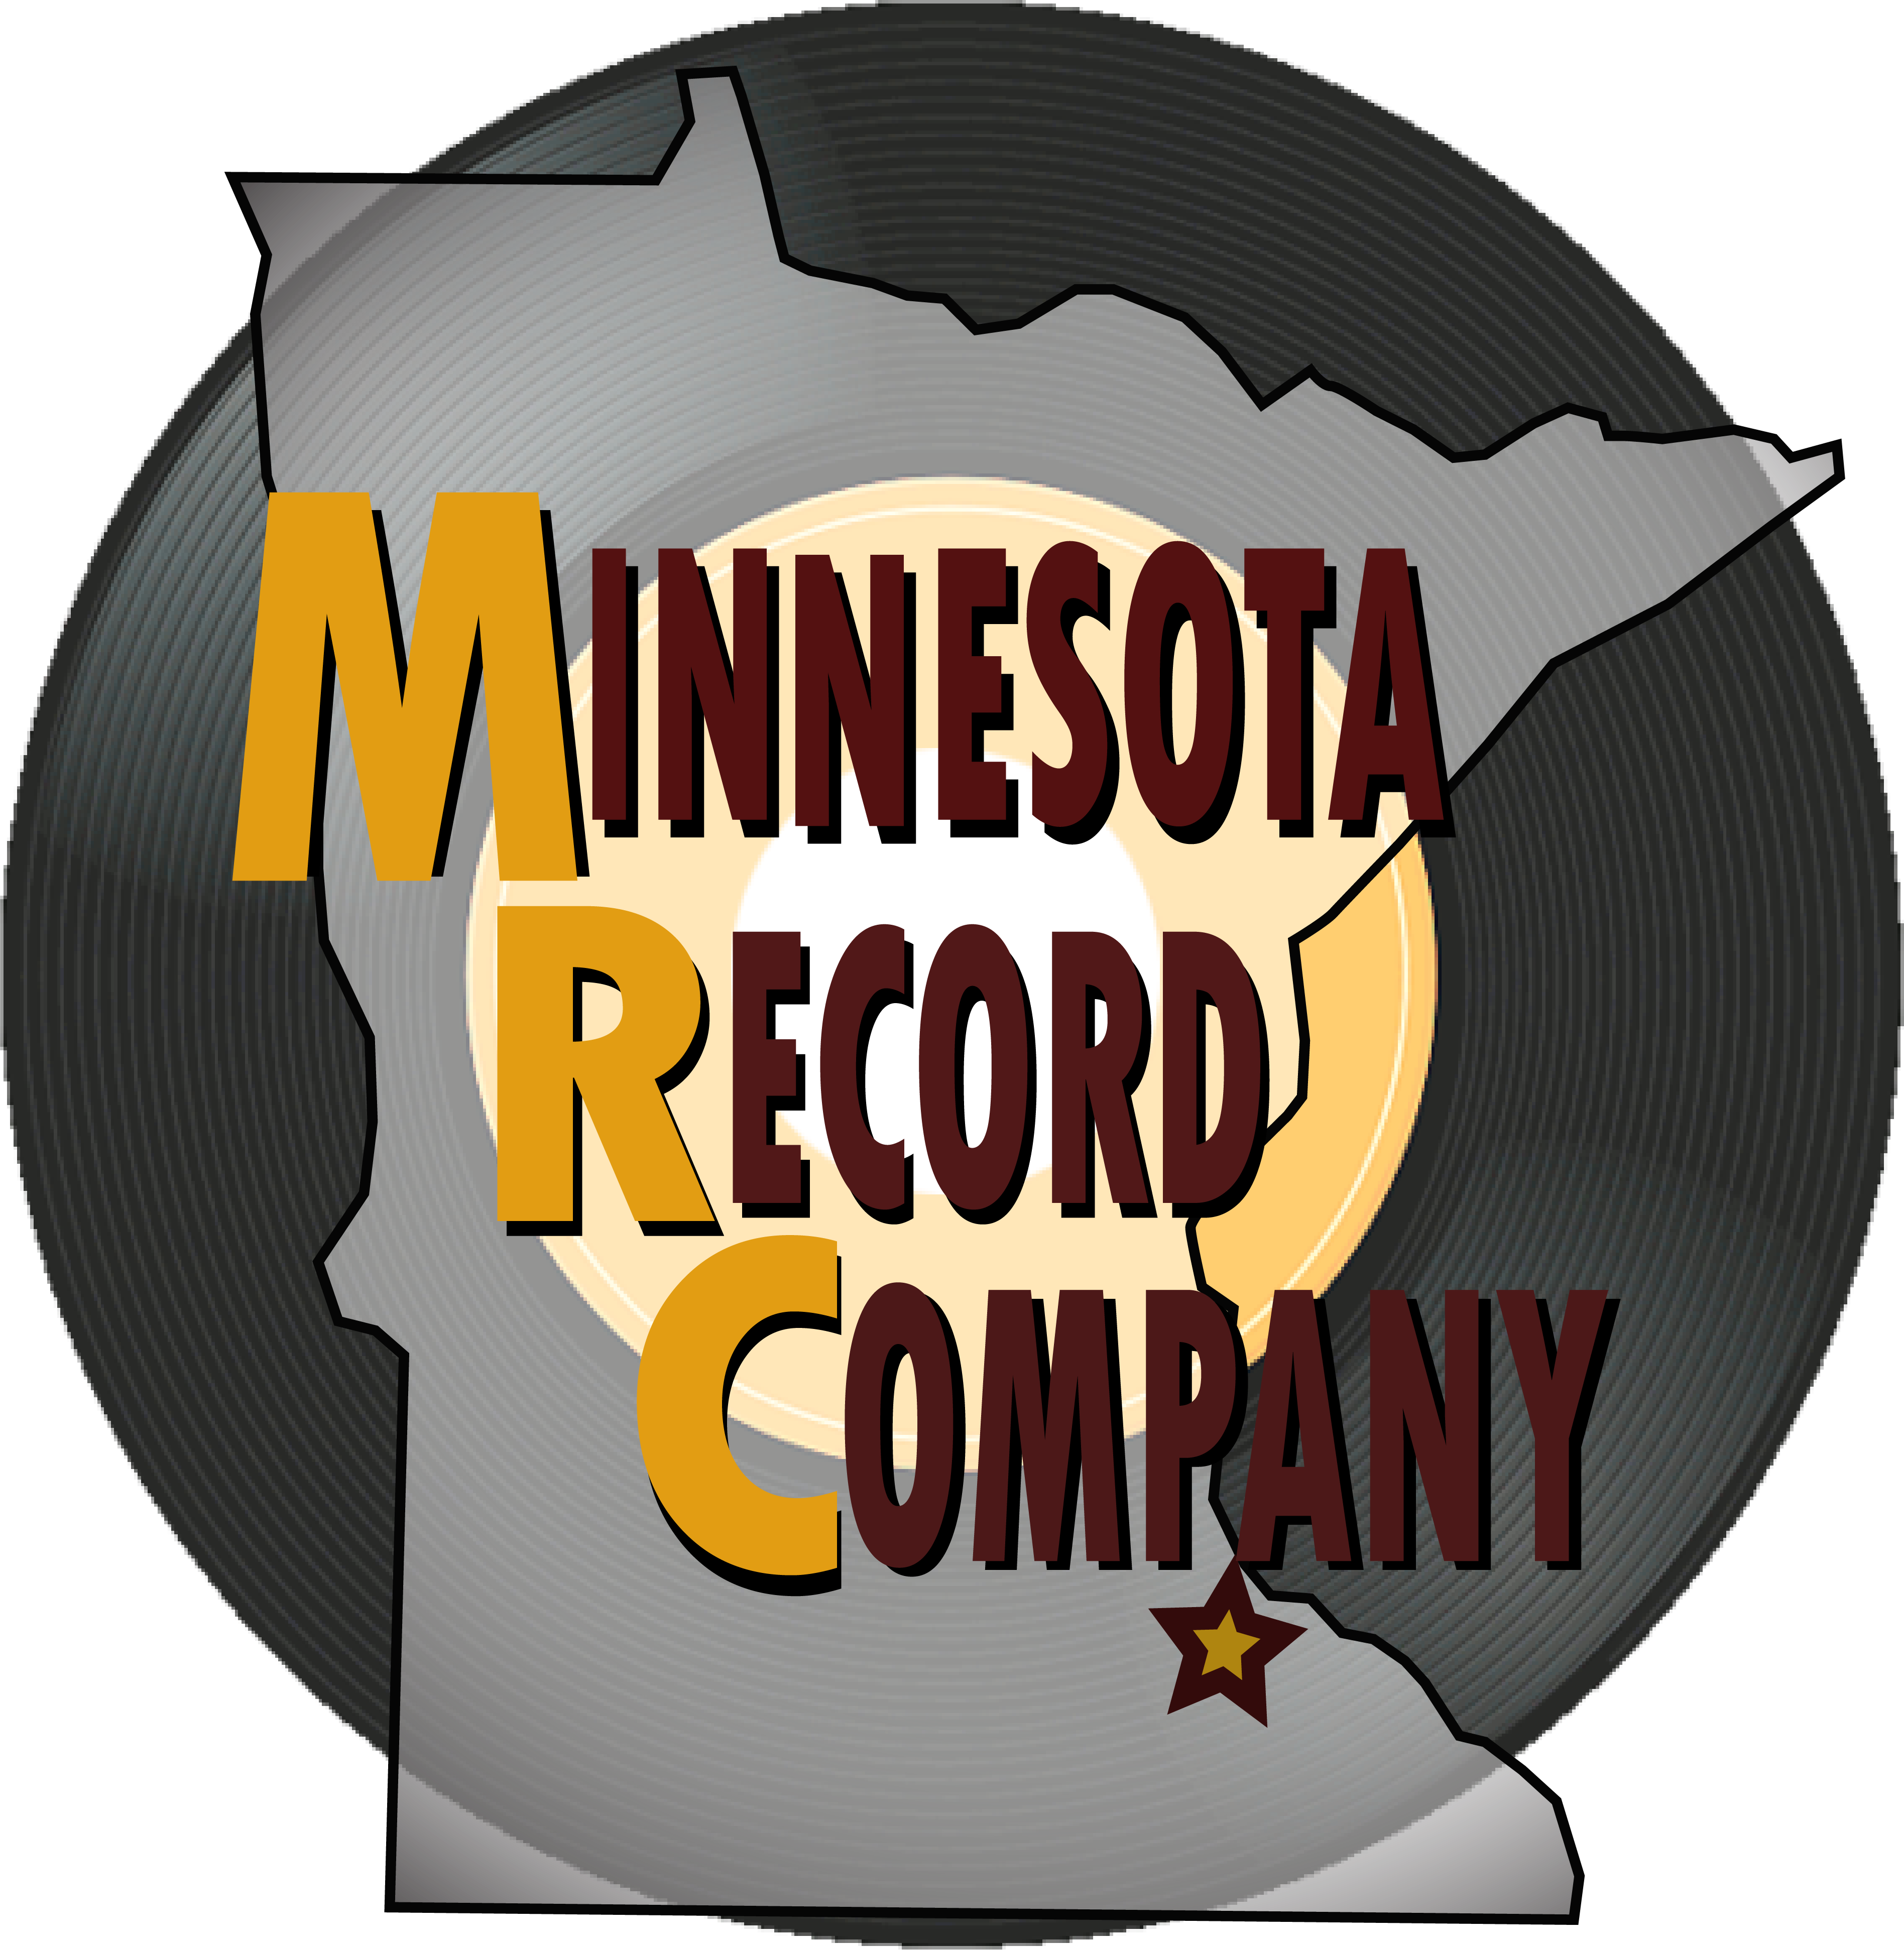 Minnesota Record Company